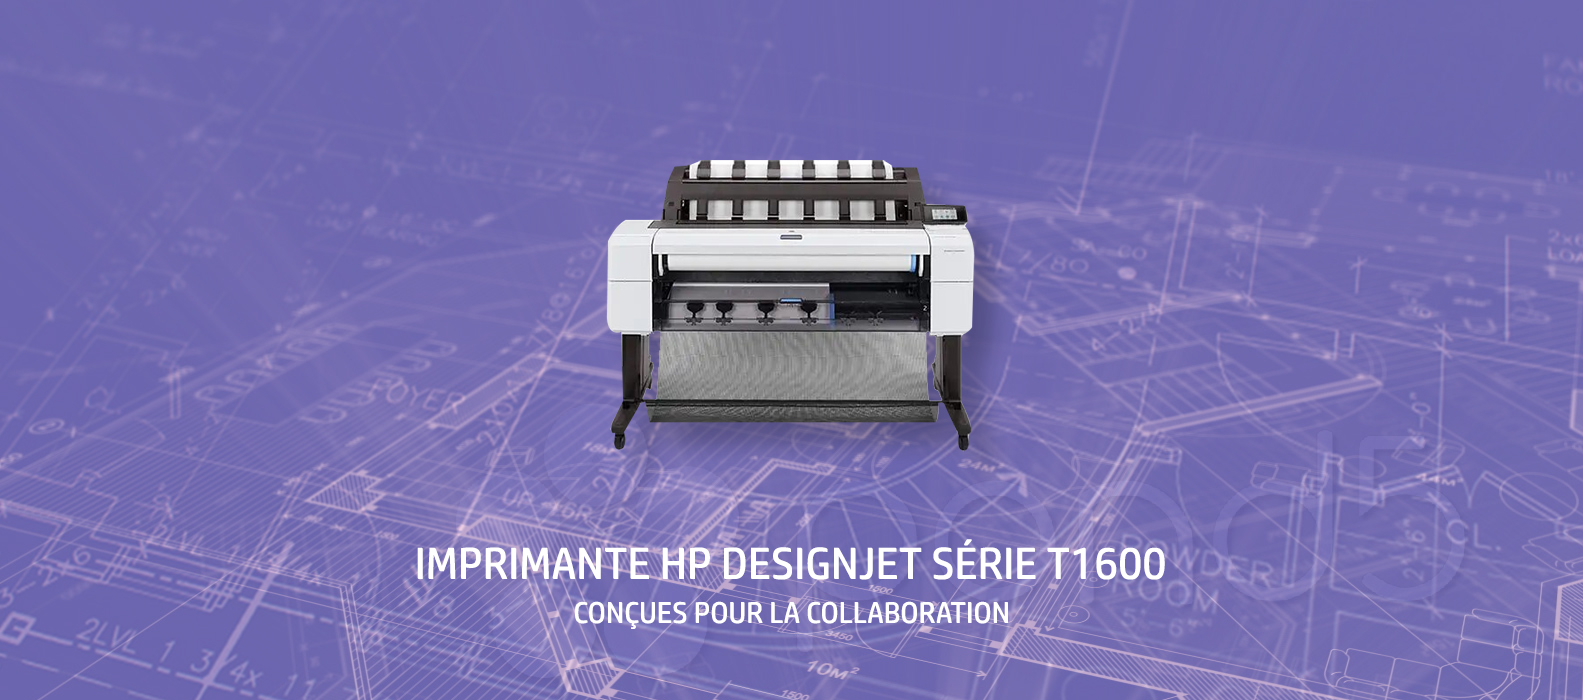 HP DesignJet série T1600